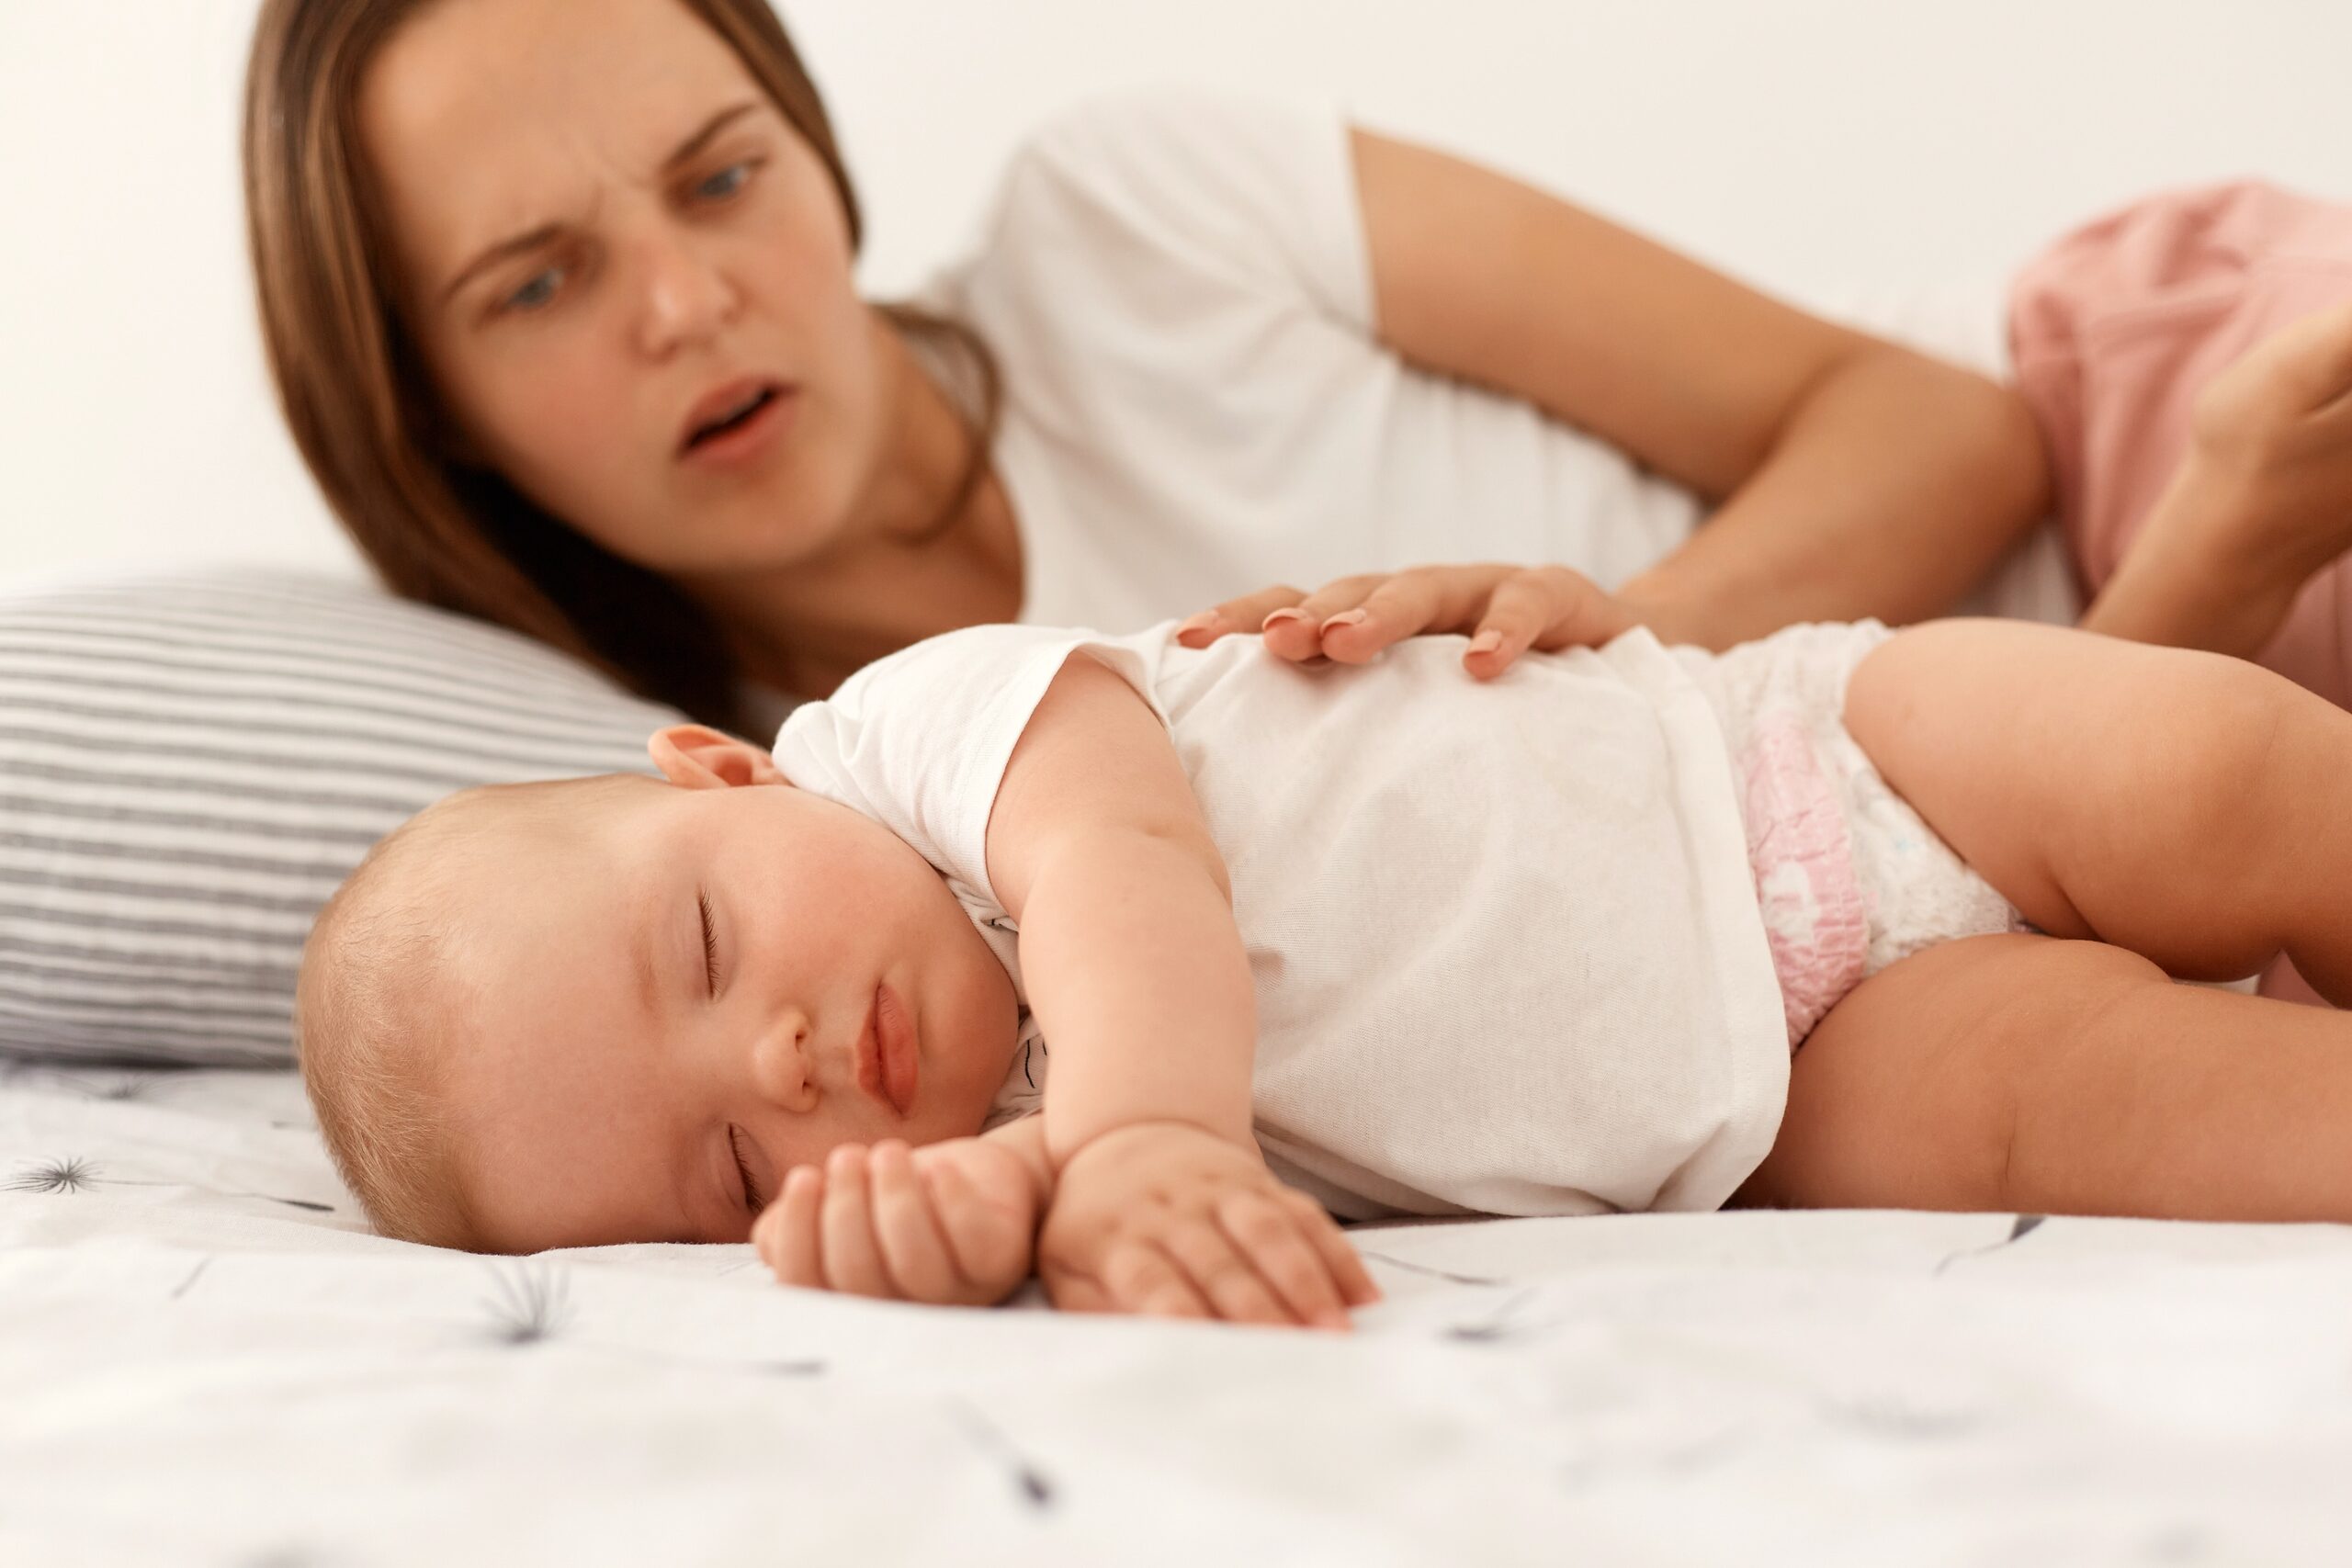 Fobia de impulsión en la maternidad: Miedo a dañar al bebé - CSC